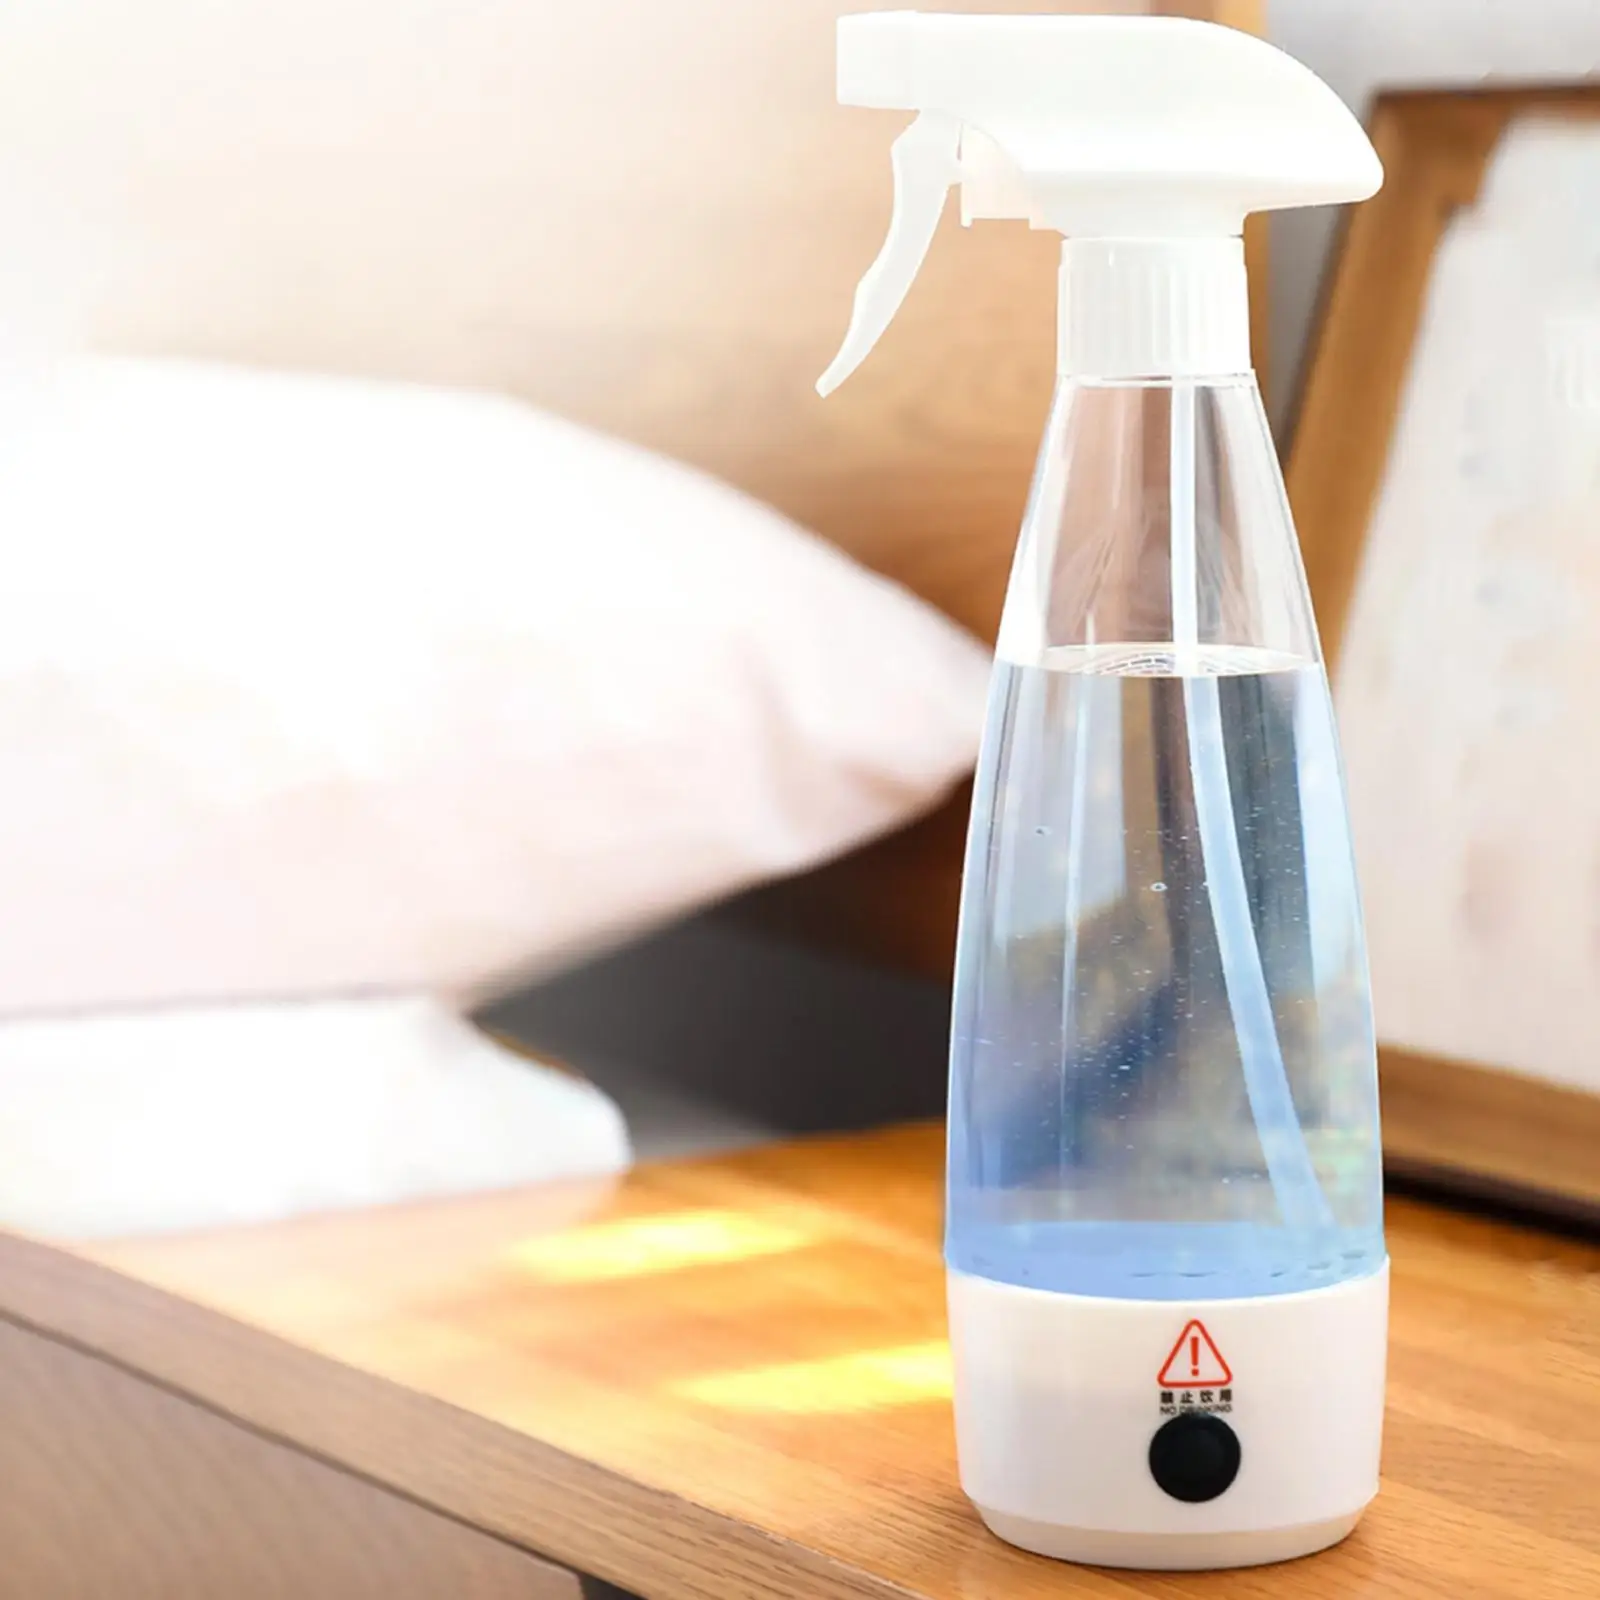 Detergent Spray Bottle Salt & water Sprayer Bottle 350ml for Toilet Home